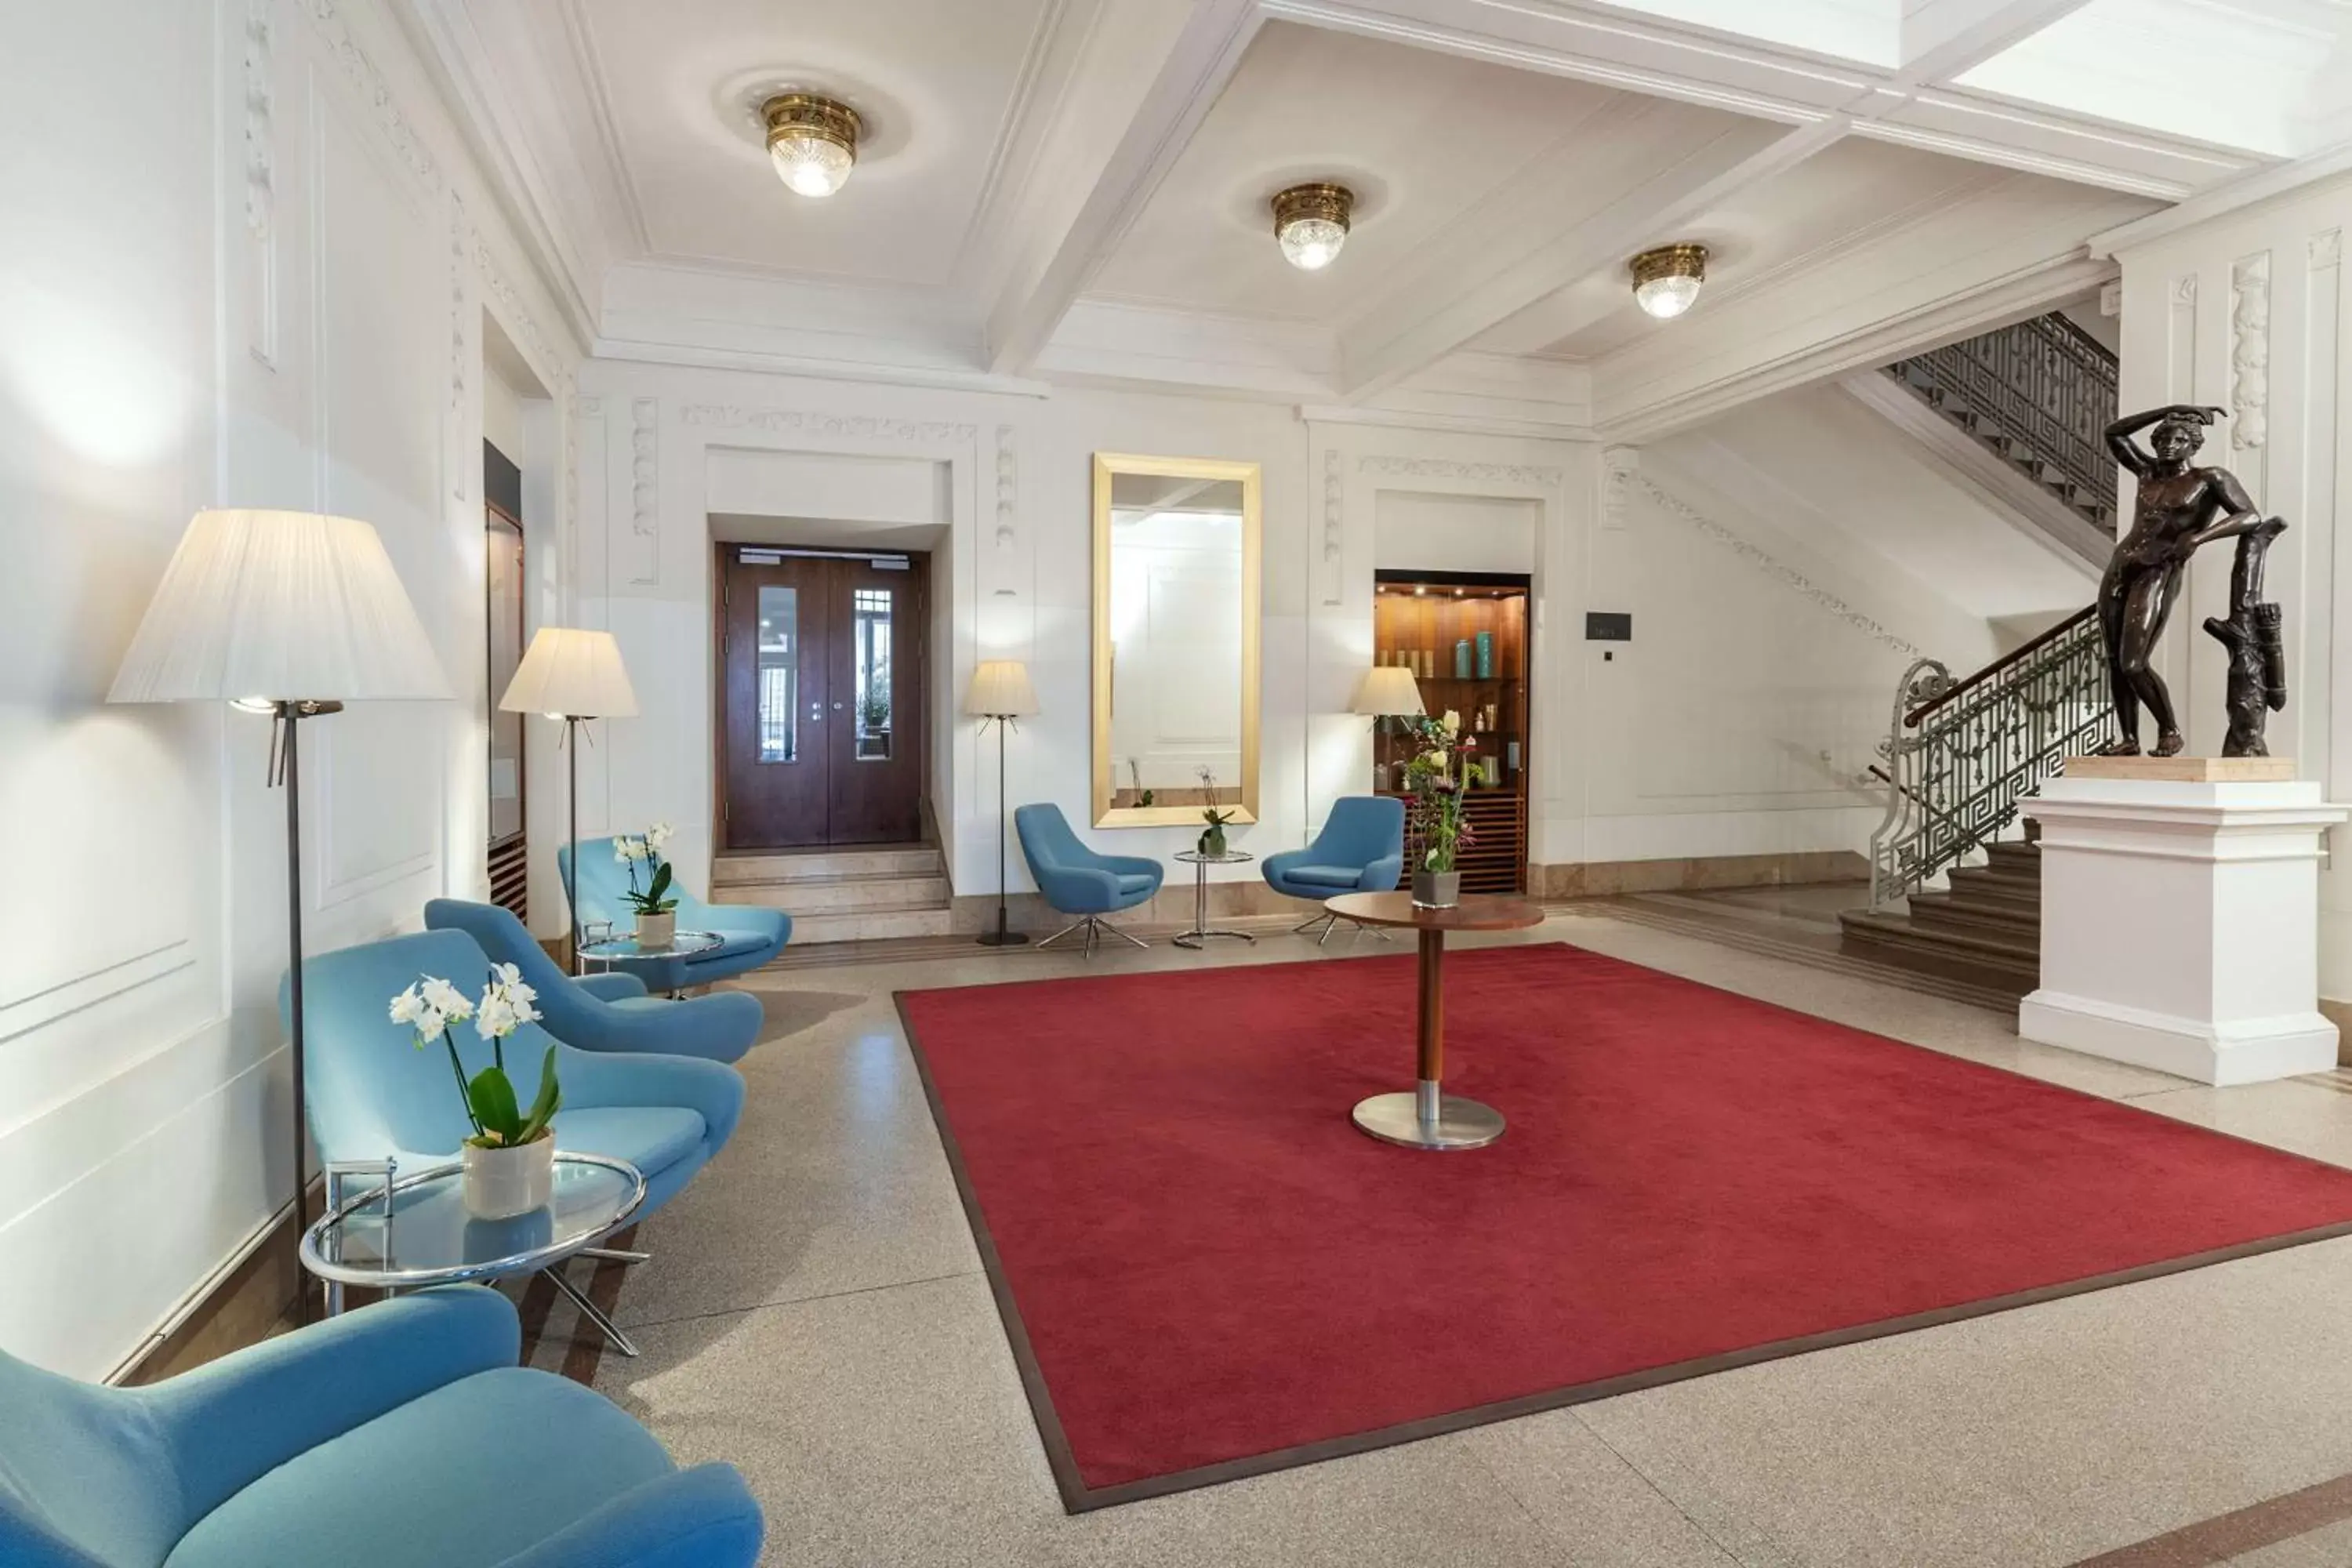 Lobby or reception in NH Wien Belvedere